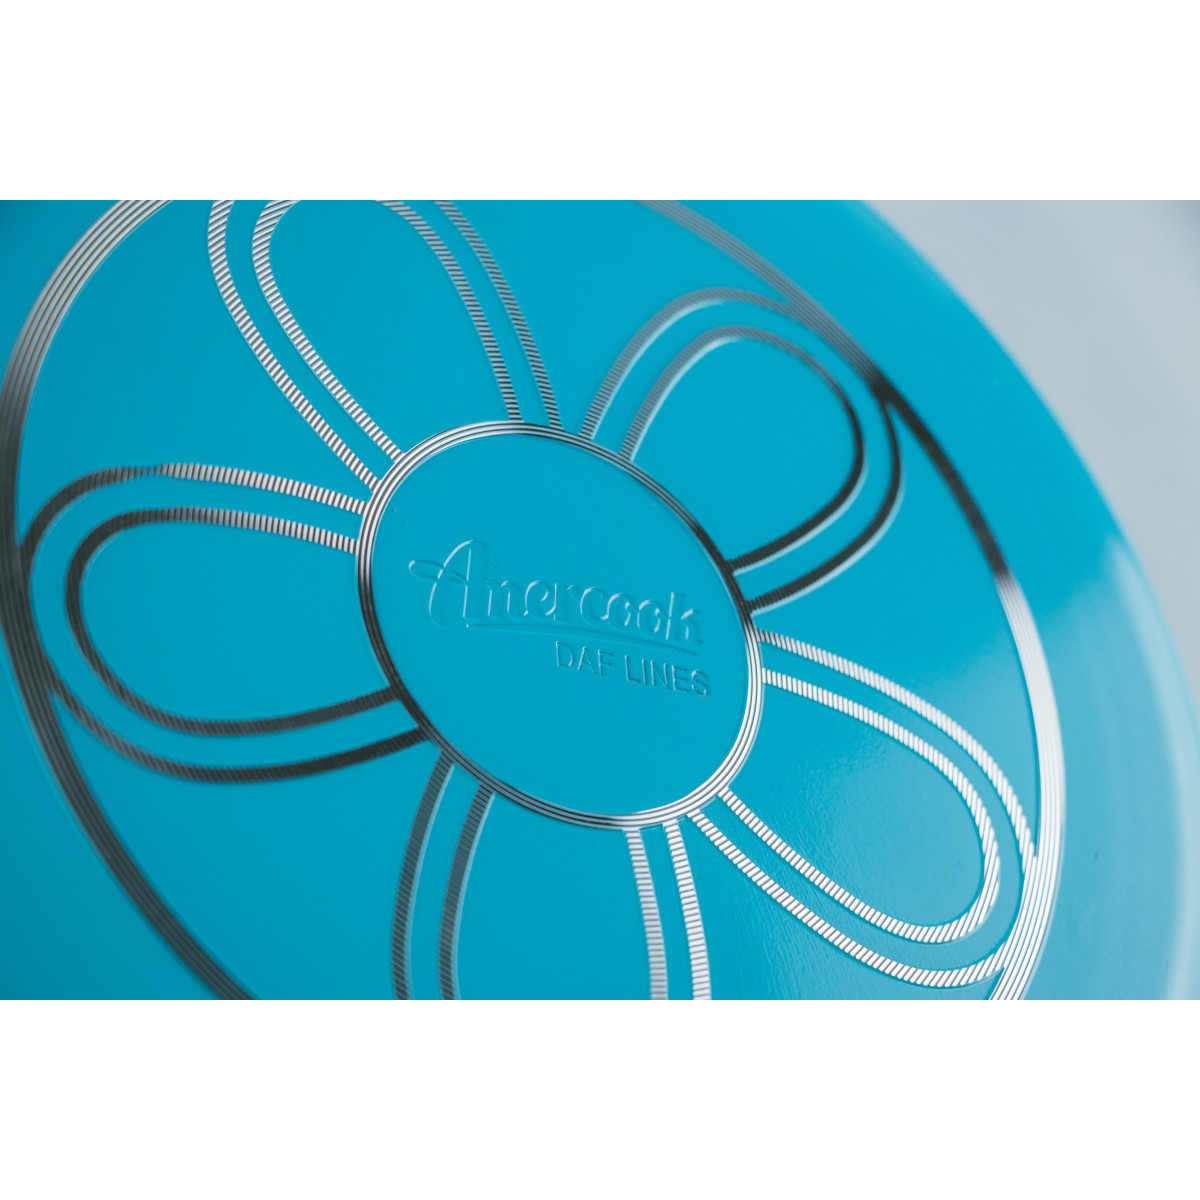 Сковорідка з підставкою BLUE FLOWER 28 x 5.8 см PR-2104-28 PEPPER